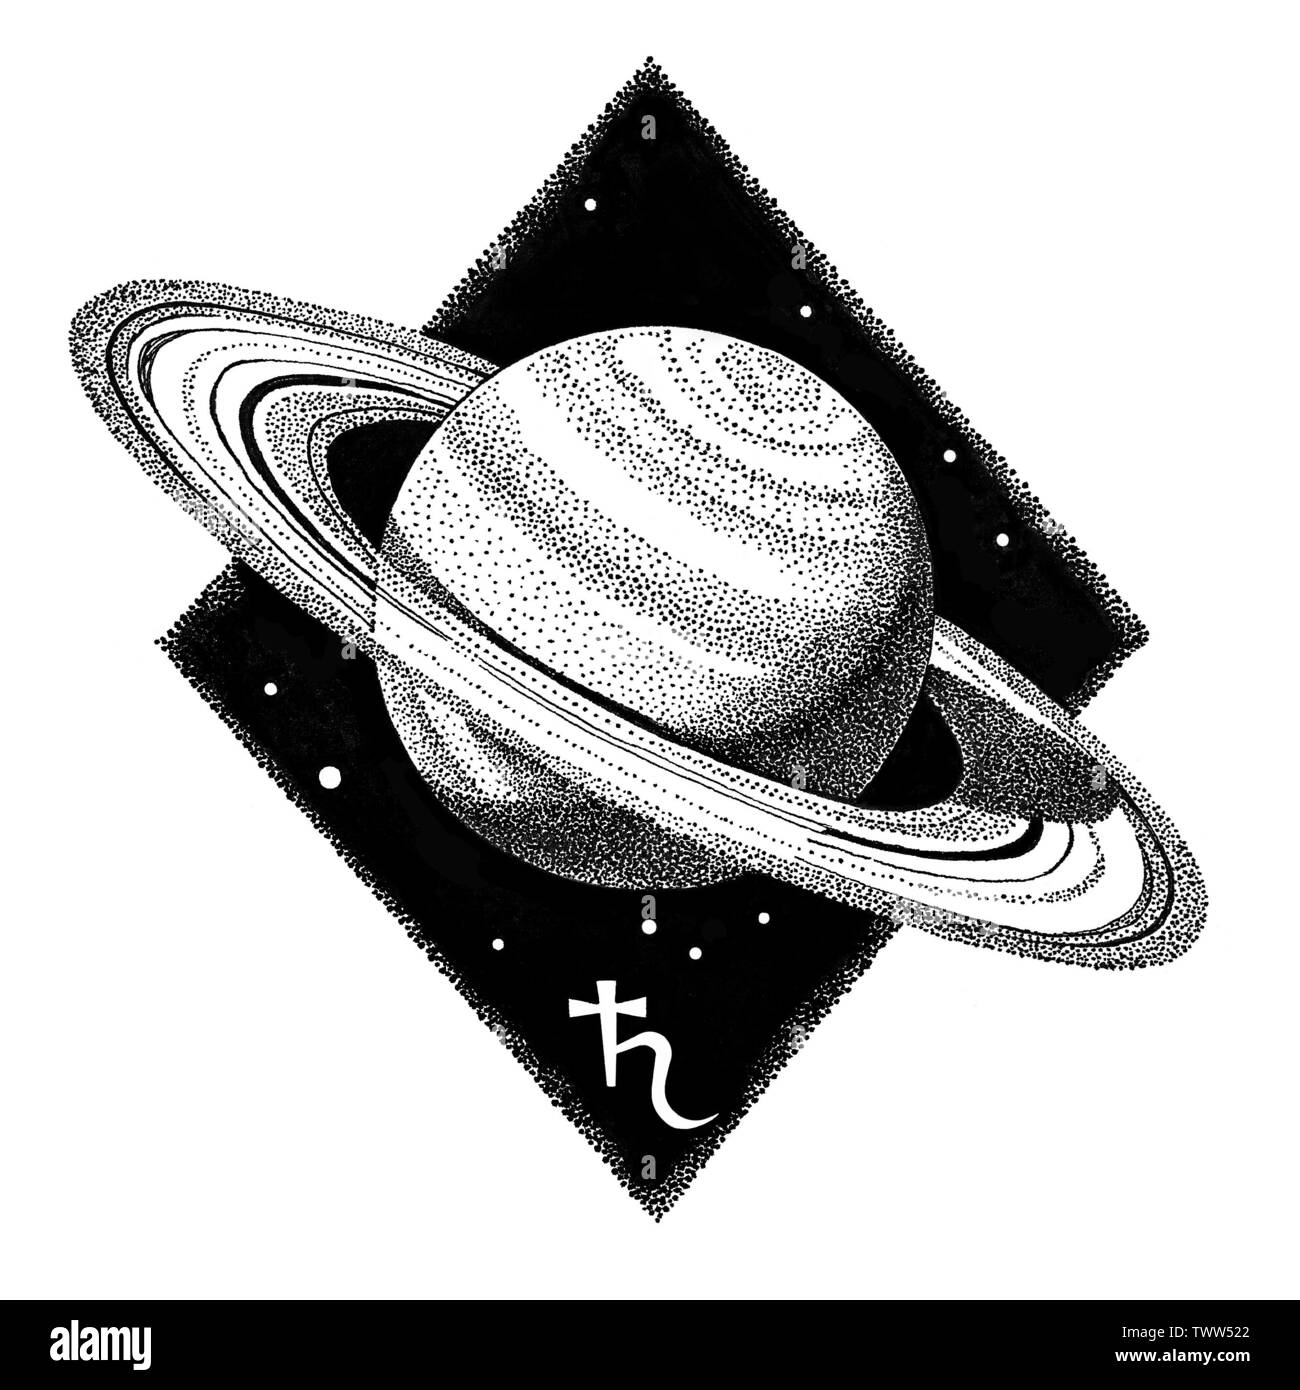 Pianeta Saturno. Disegnato a mano la penna inchiostro illustrazione in stile dotwork. Il concetto di spazio, astrologia astronomia t shirt stampa, cosmic logo design. R astrologica Foto Stock